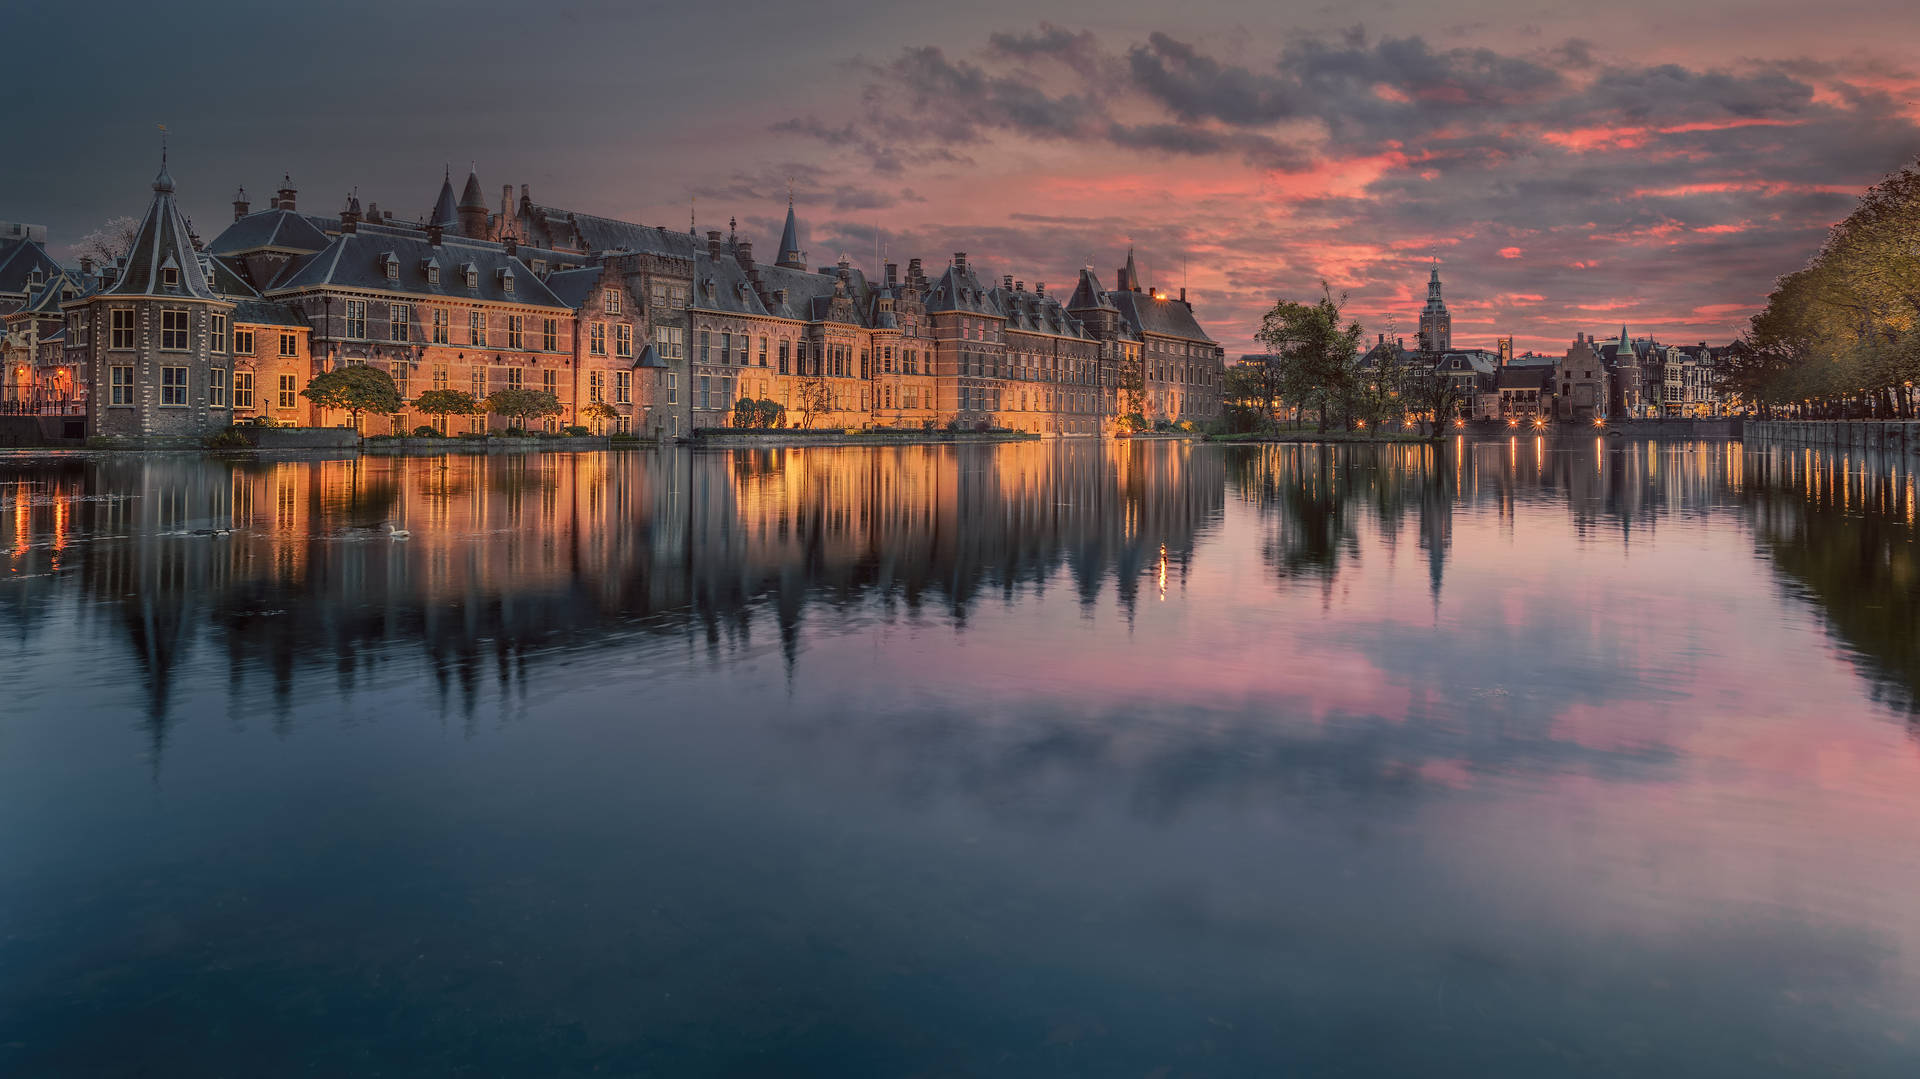 Castle, Palace, Lake, Reflection